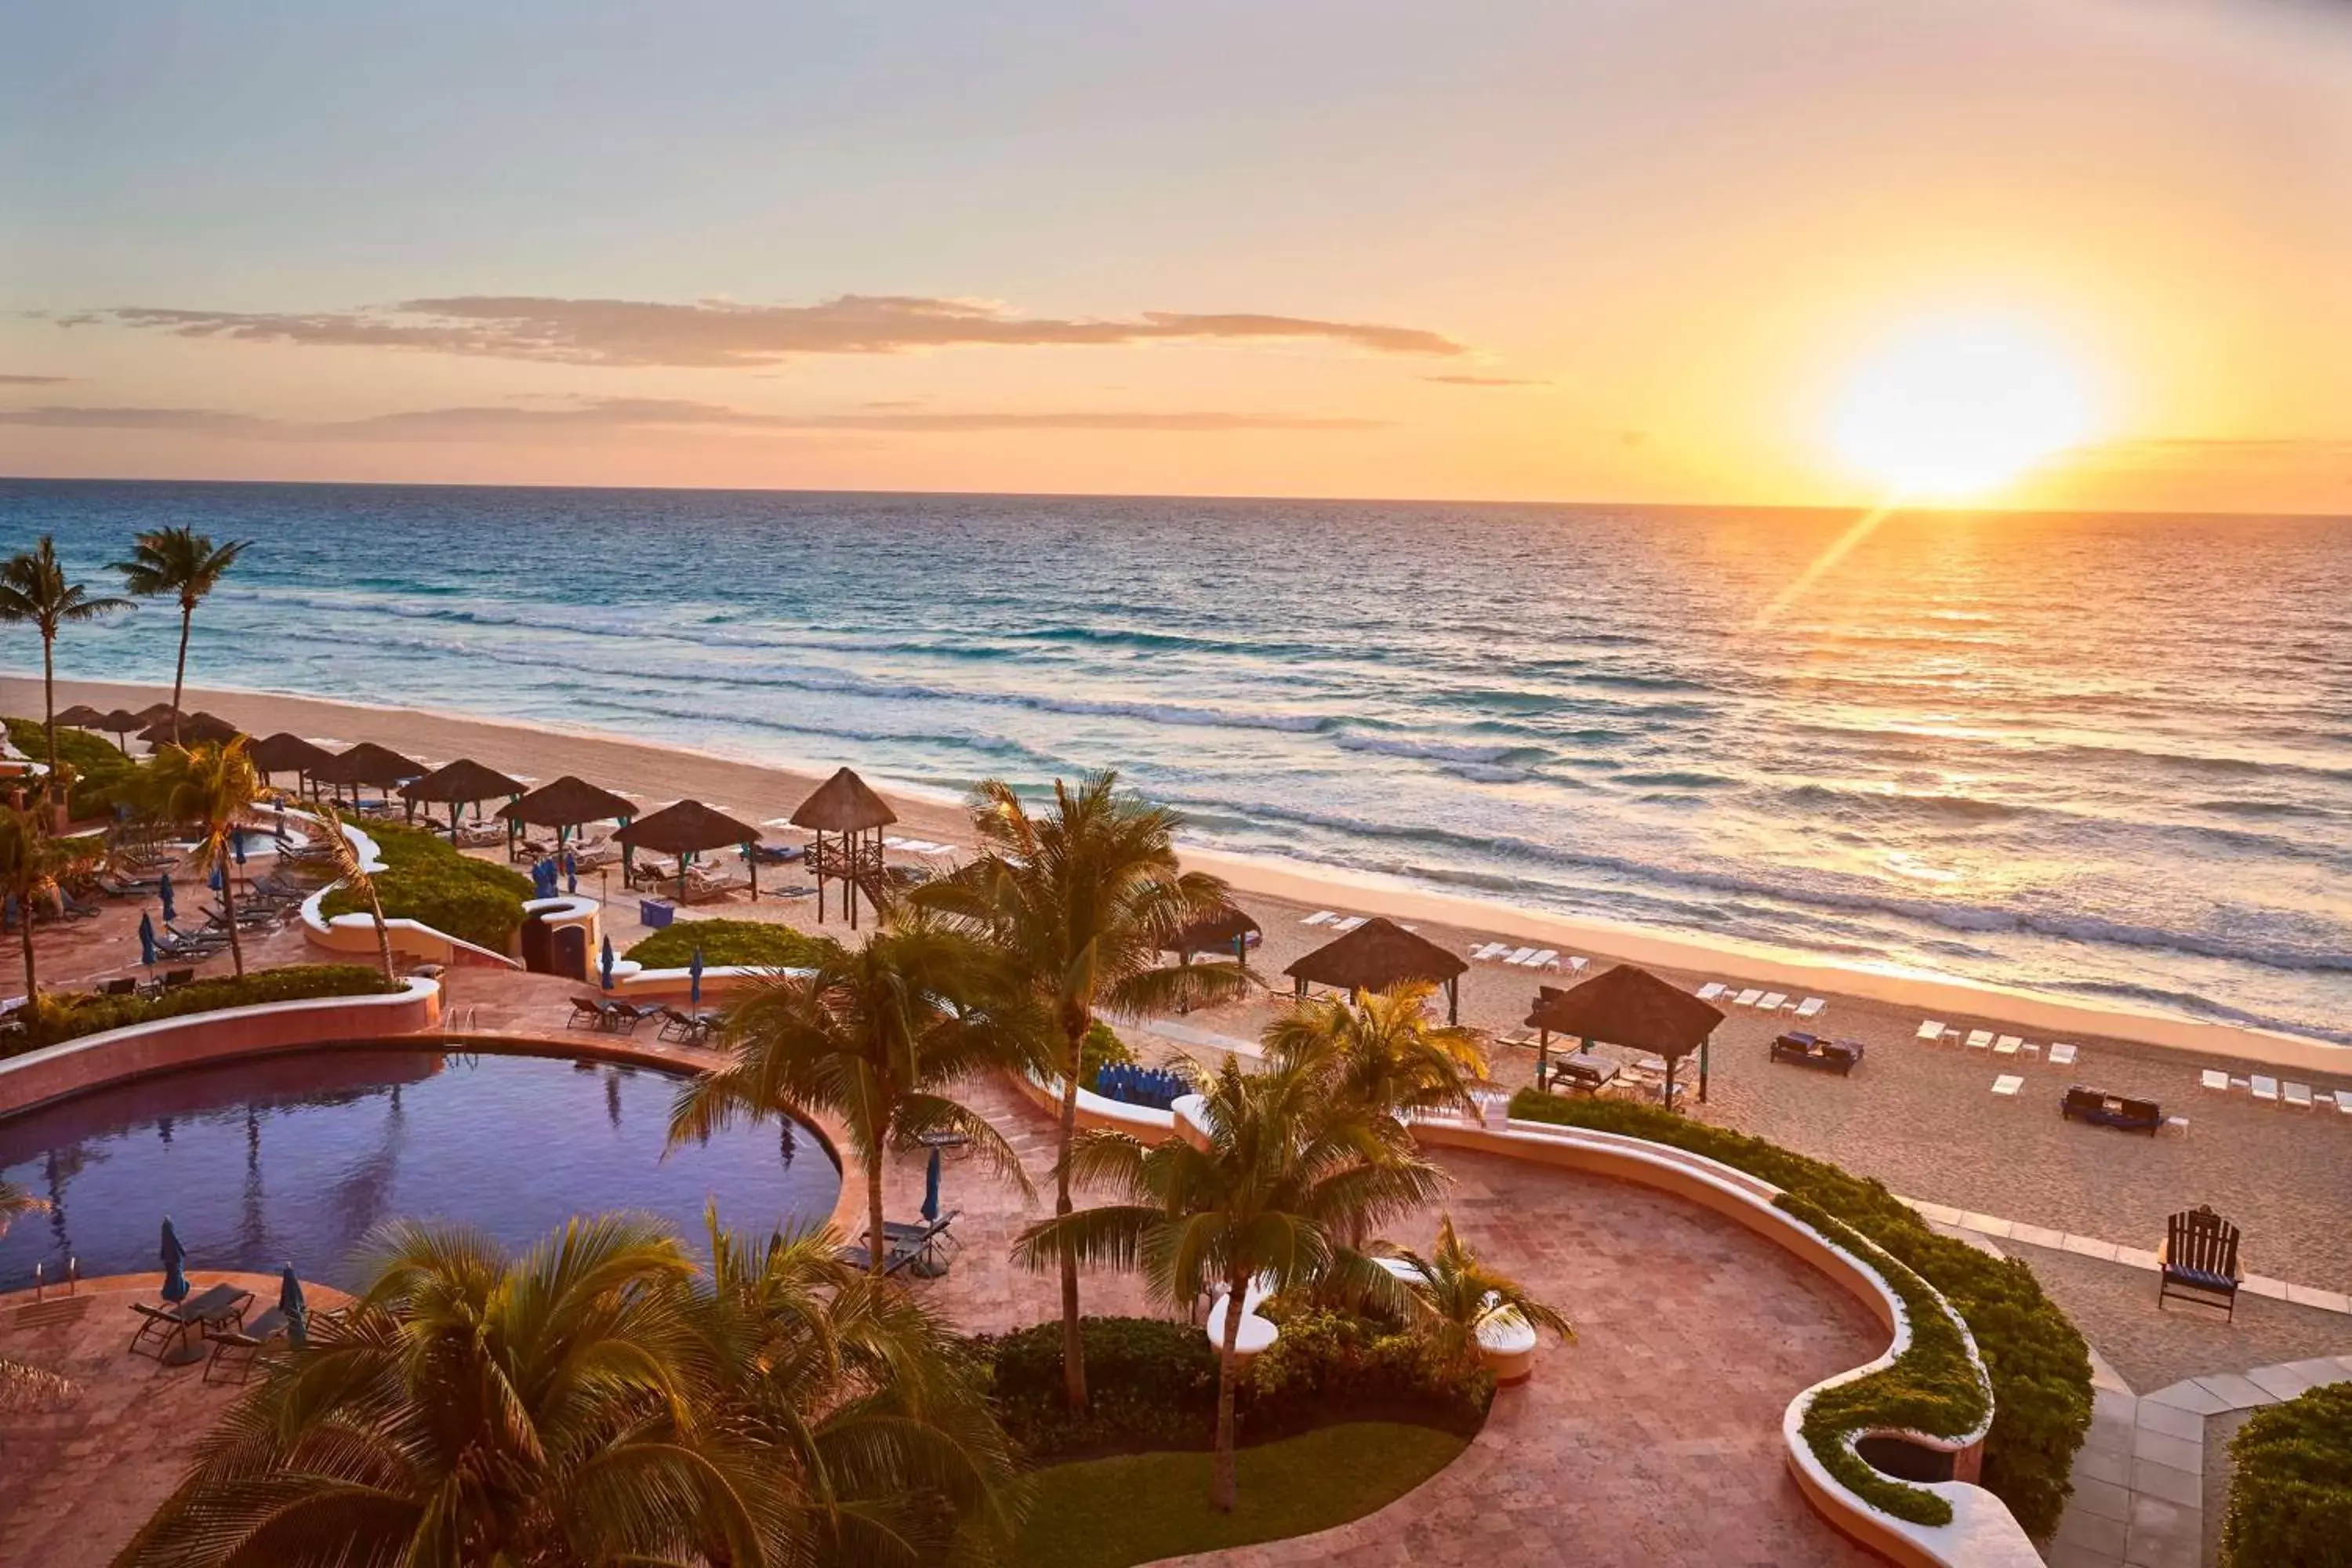 Beach, Pool View in Kempinski Hotel Cancun